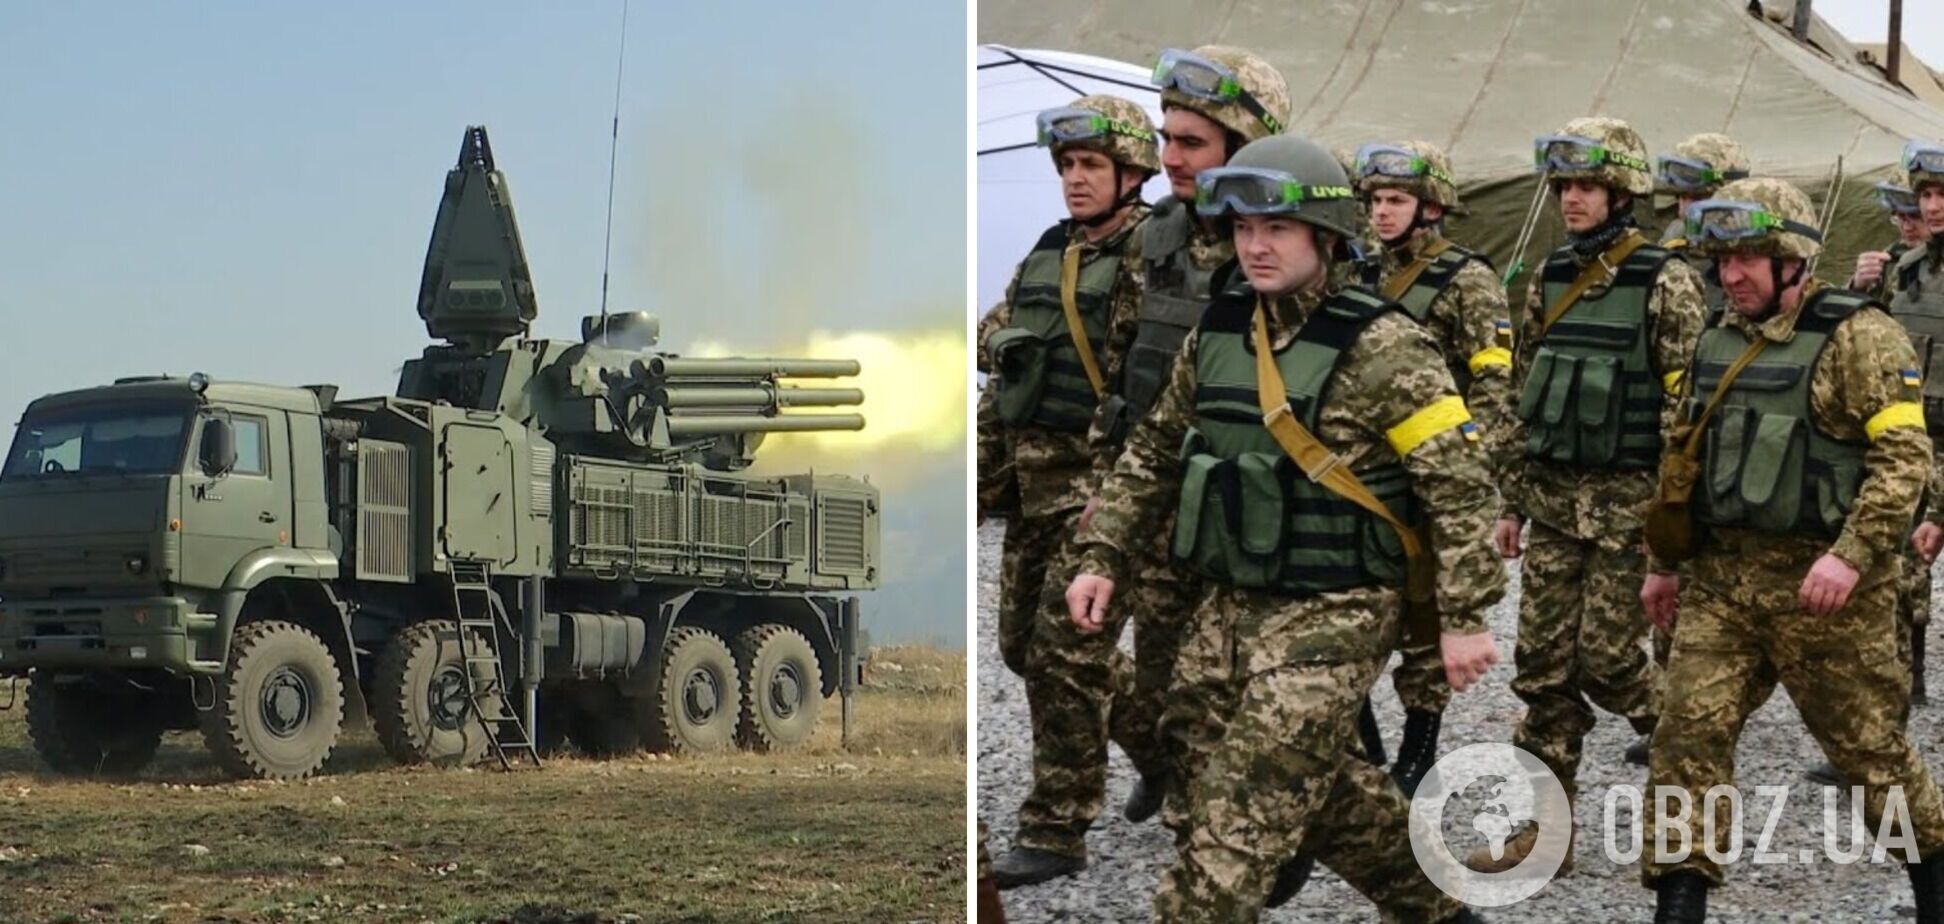 'Панцирь' – наш!' В Херсонской области ВСУ захватили новейший российский ракетный комплекс.